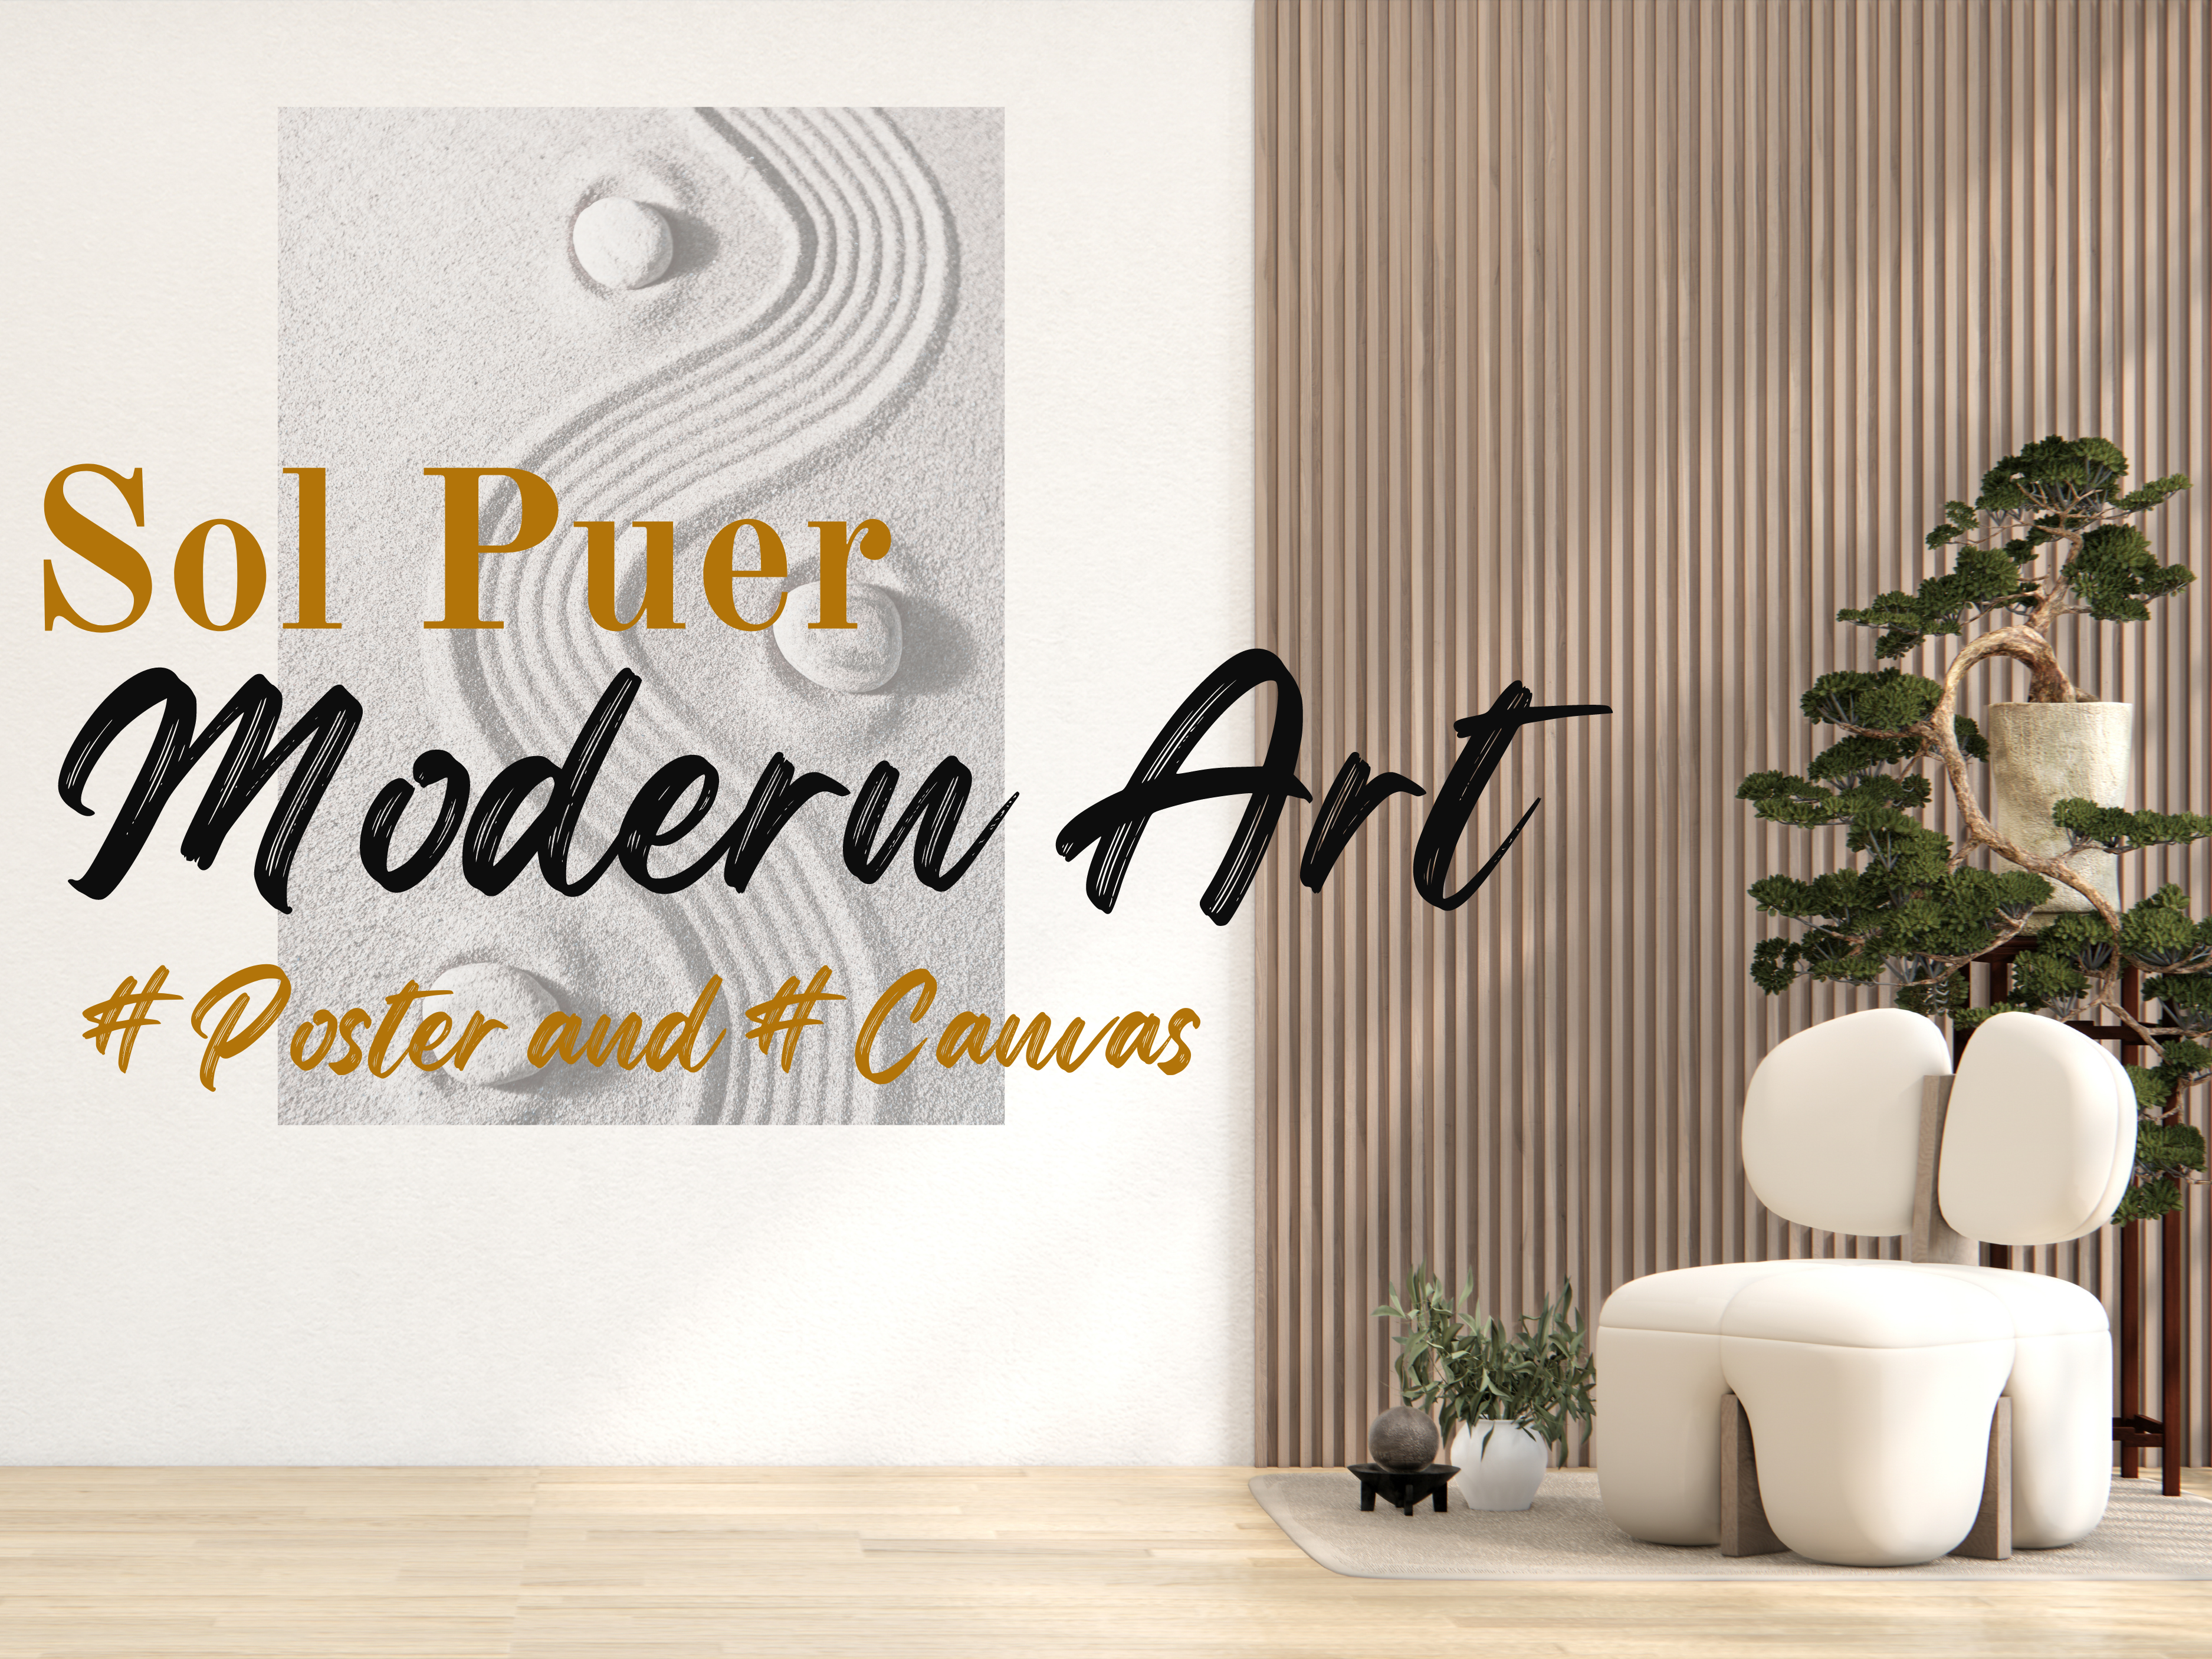 Sol Puer - Modern Art #Poster and #Canvas mit Wohnwand im Hintergrund